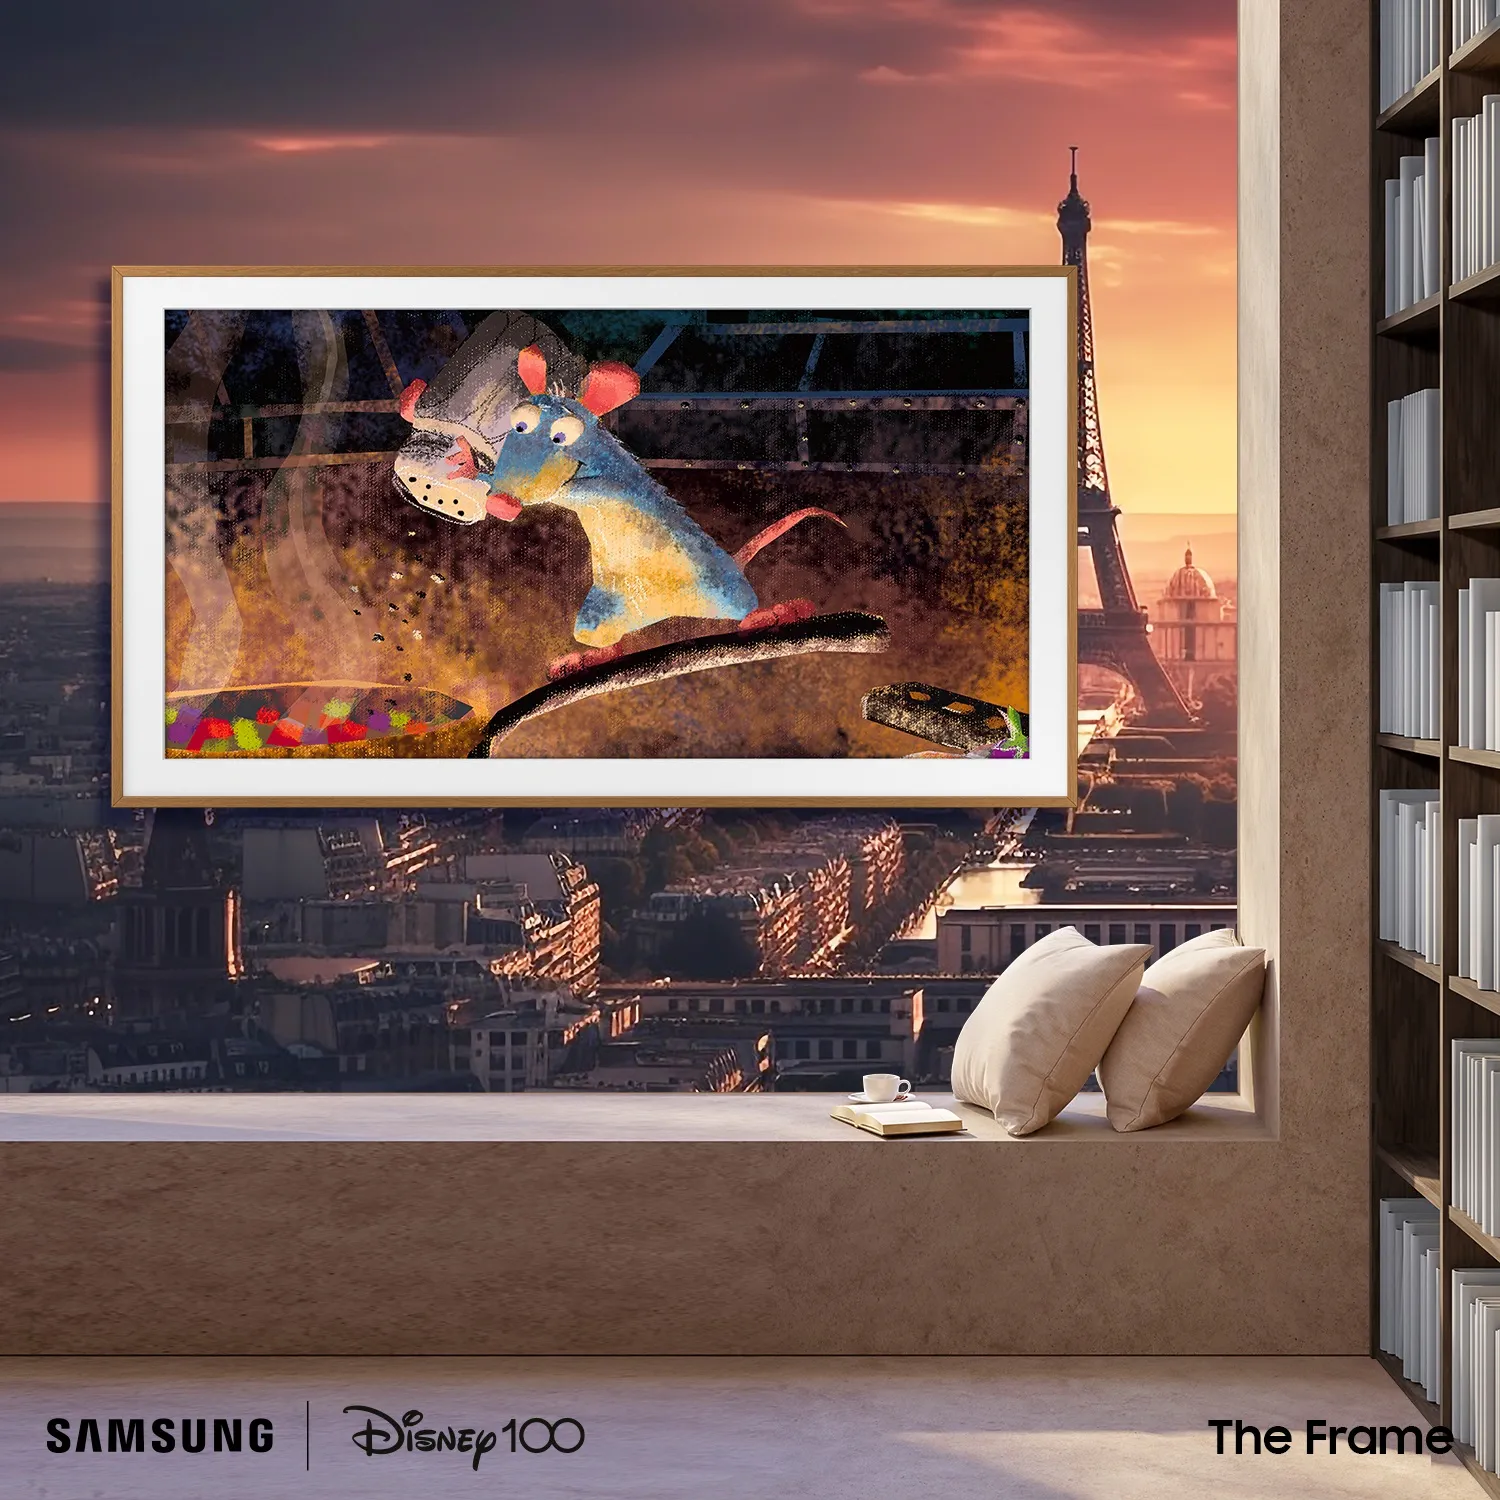 Samsung kỷ niệm 100 năm thành lập Disney với The Frame-Disney100